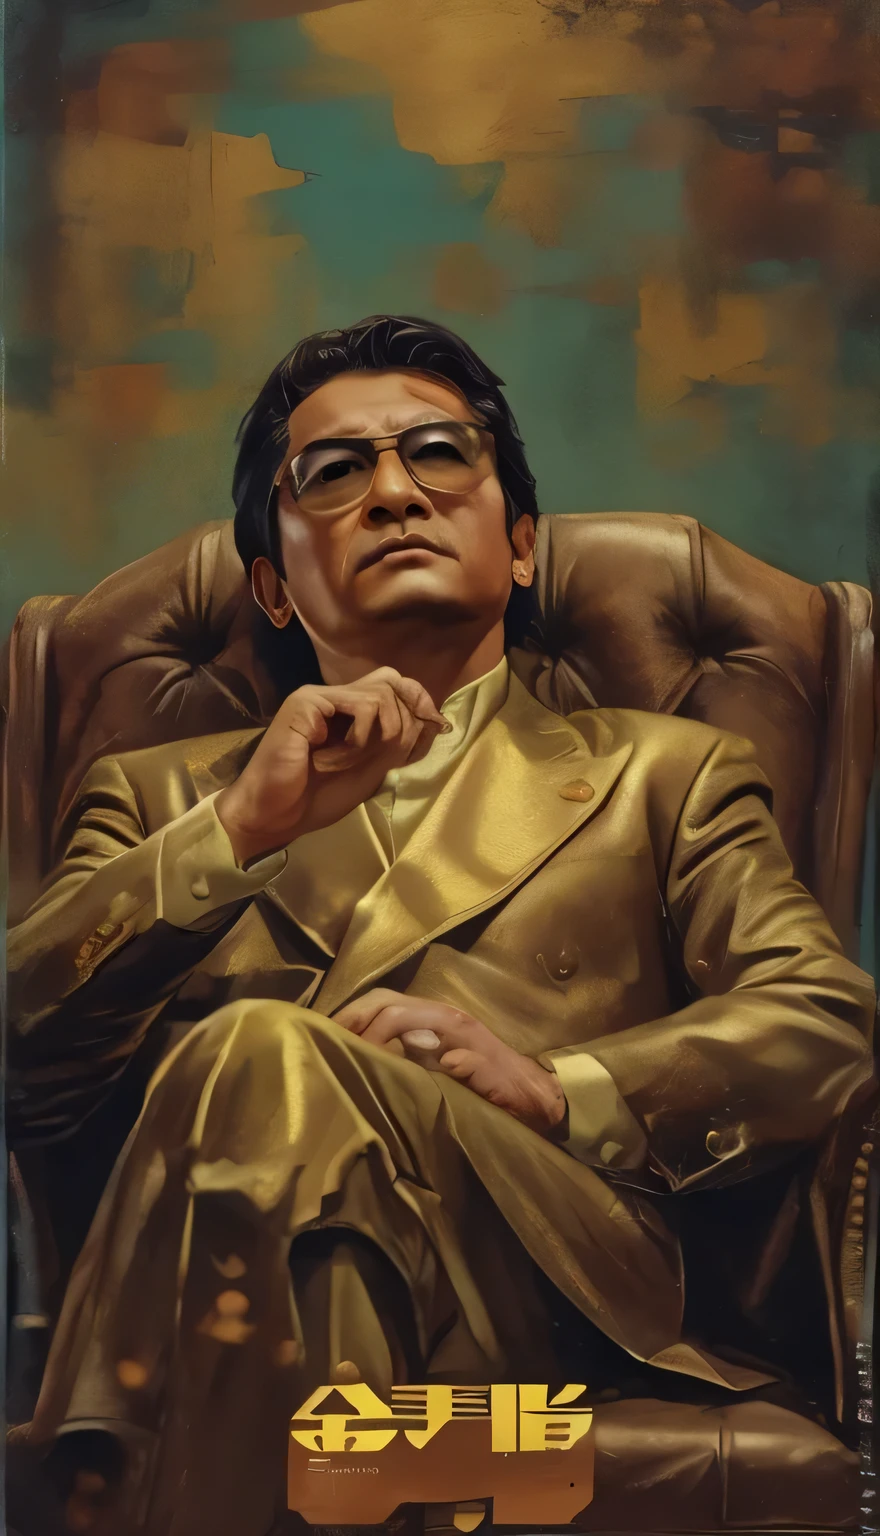 Il y a un homme assis sur une chaise，（Porter un costume argenté)，avec des lunettes à monture dorée，,, Hideaki Yasuno, bandit, biopic,  animé, À la manière de Wong Kar Wai, Comme Tony Leung, araki, L&#39;arrière-plan est une peinture de renommée mondiale，Un tableau célèbre